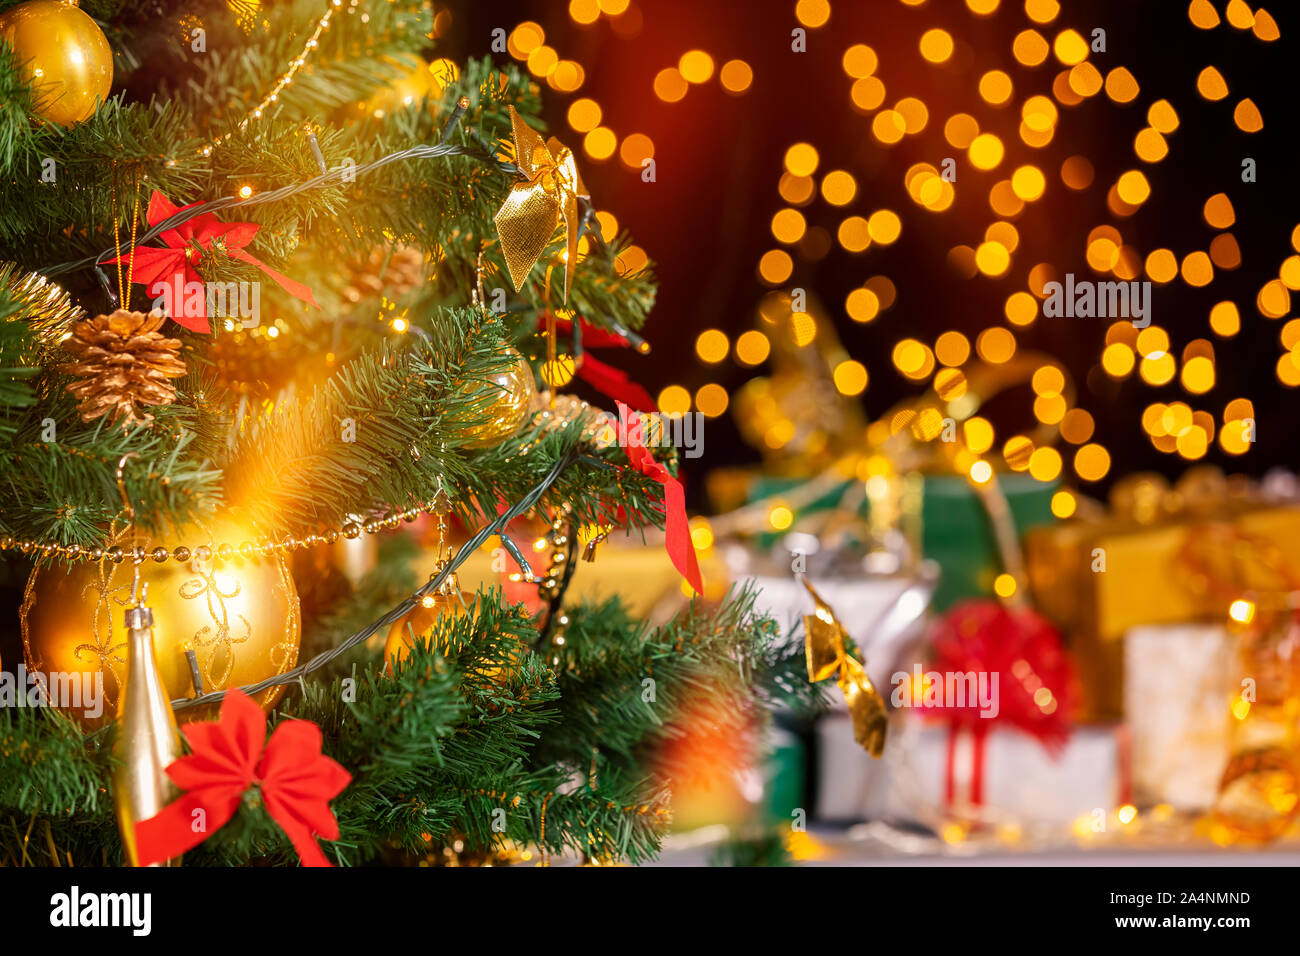 Pile de cadeaux emballés en vertu de l'arbre de Noël contre des particules de lumières. Beaucoup de cadeaux de Noël sous l'arbre. Selective focus sur le globe jaune ! Banque D'Images